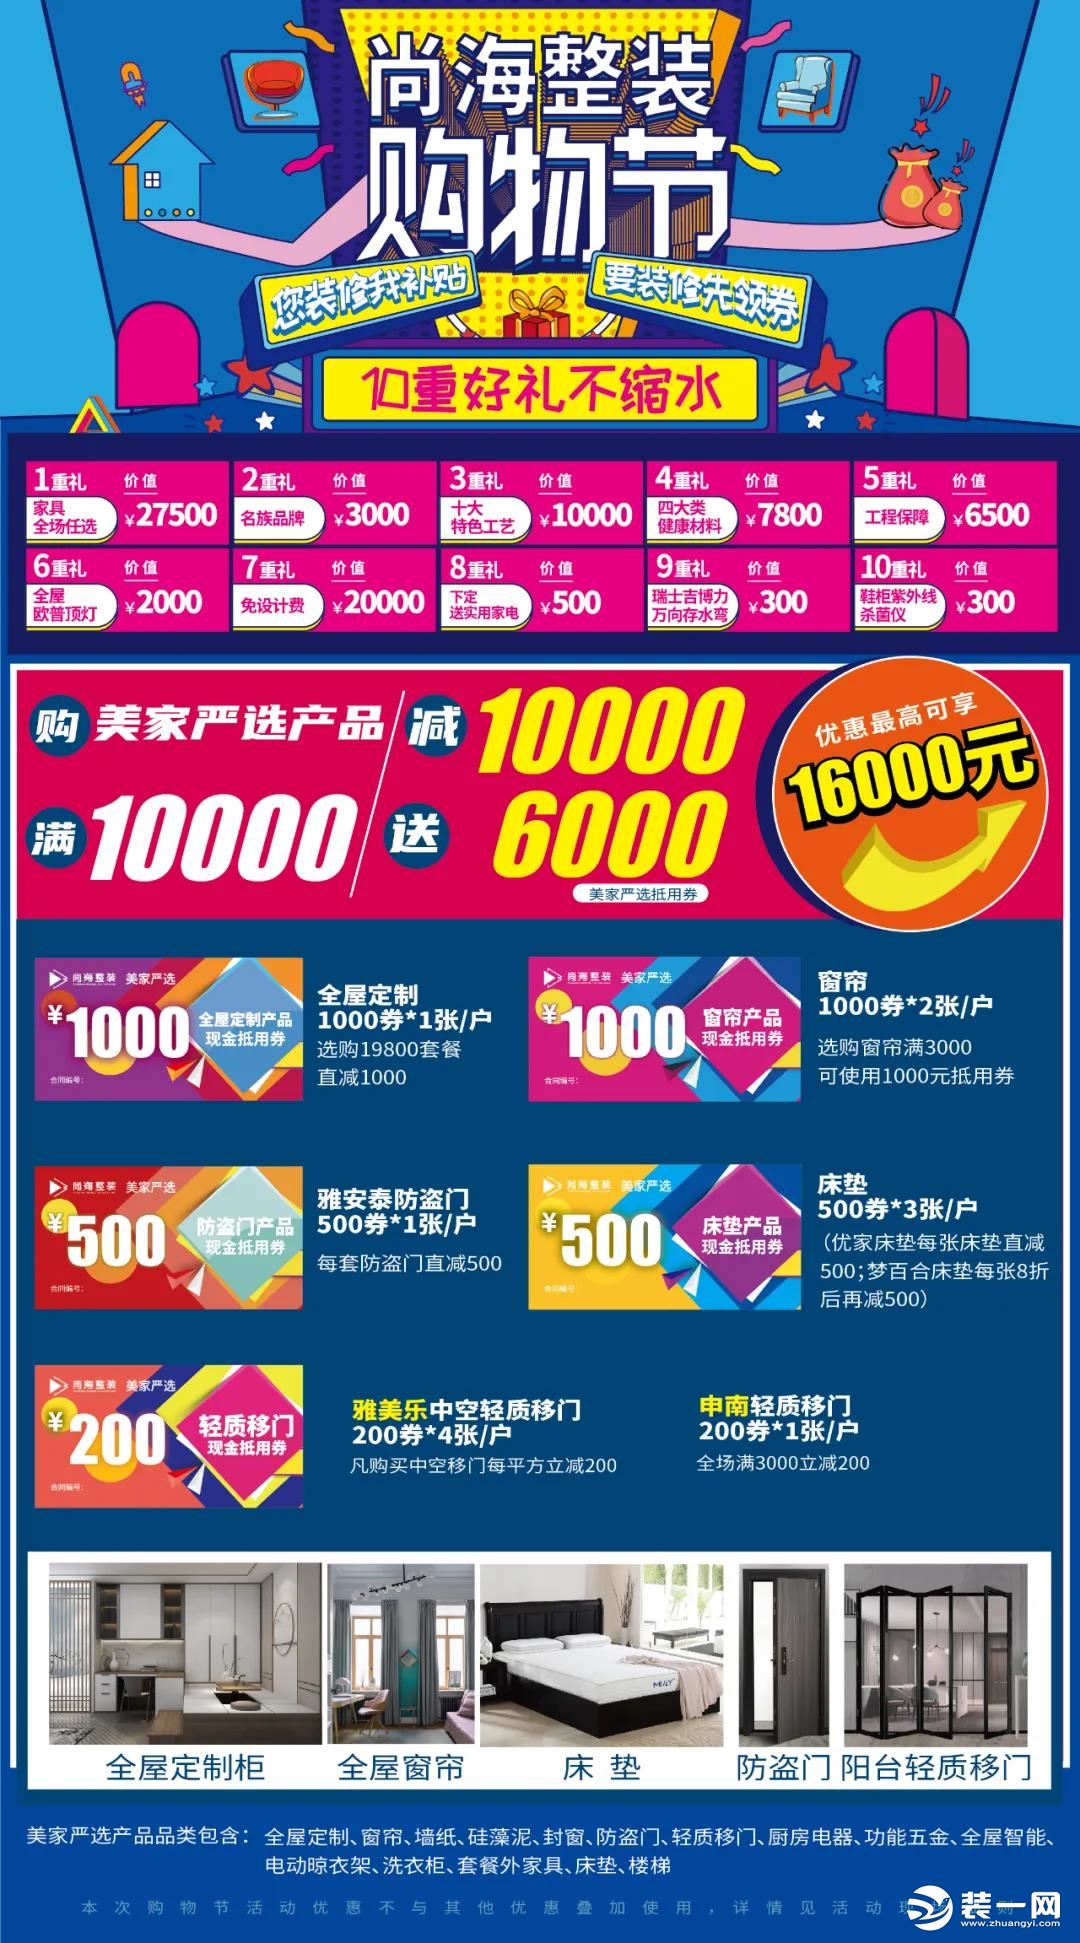 尚海整装 千万家装消费券 助力上海“五五购物节”